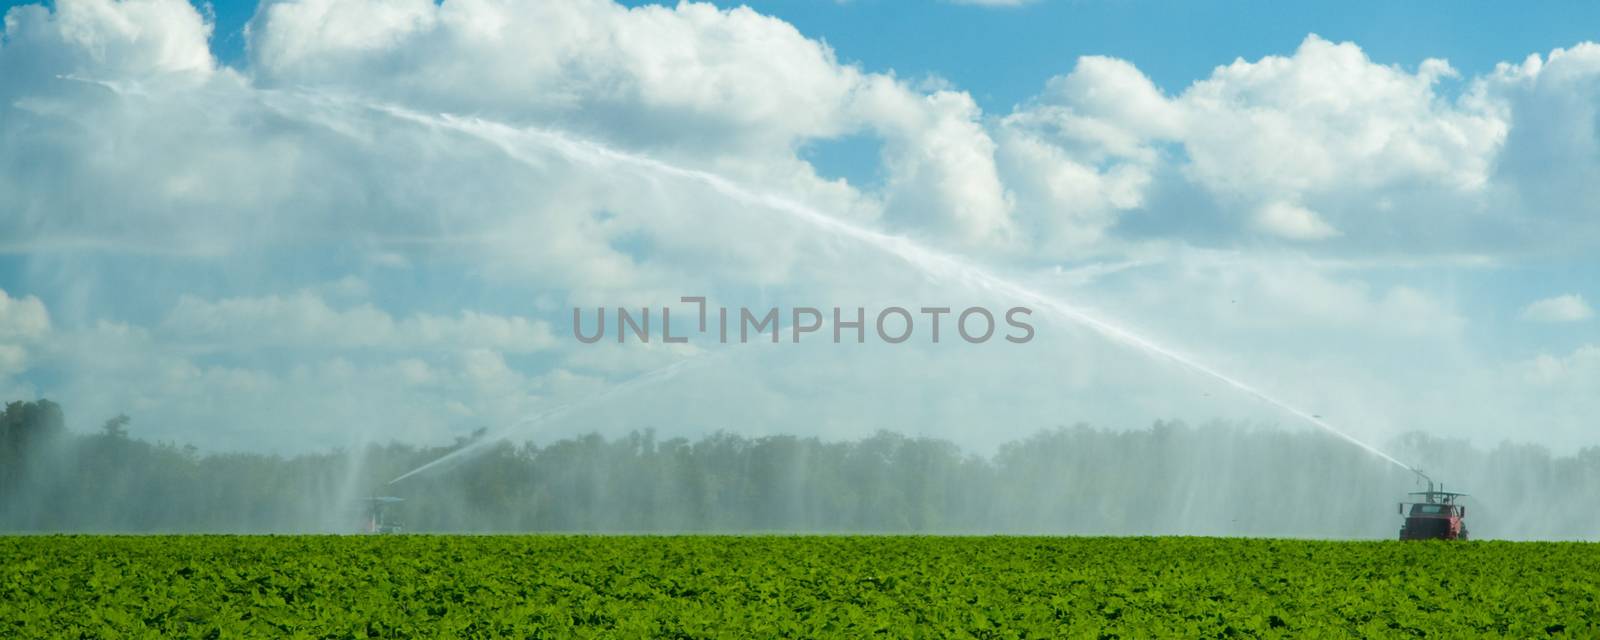 Trucks irrigating green field by CelsoDiniz